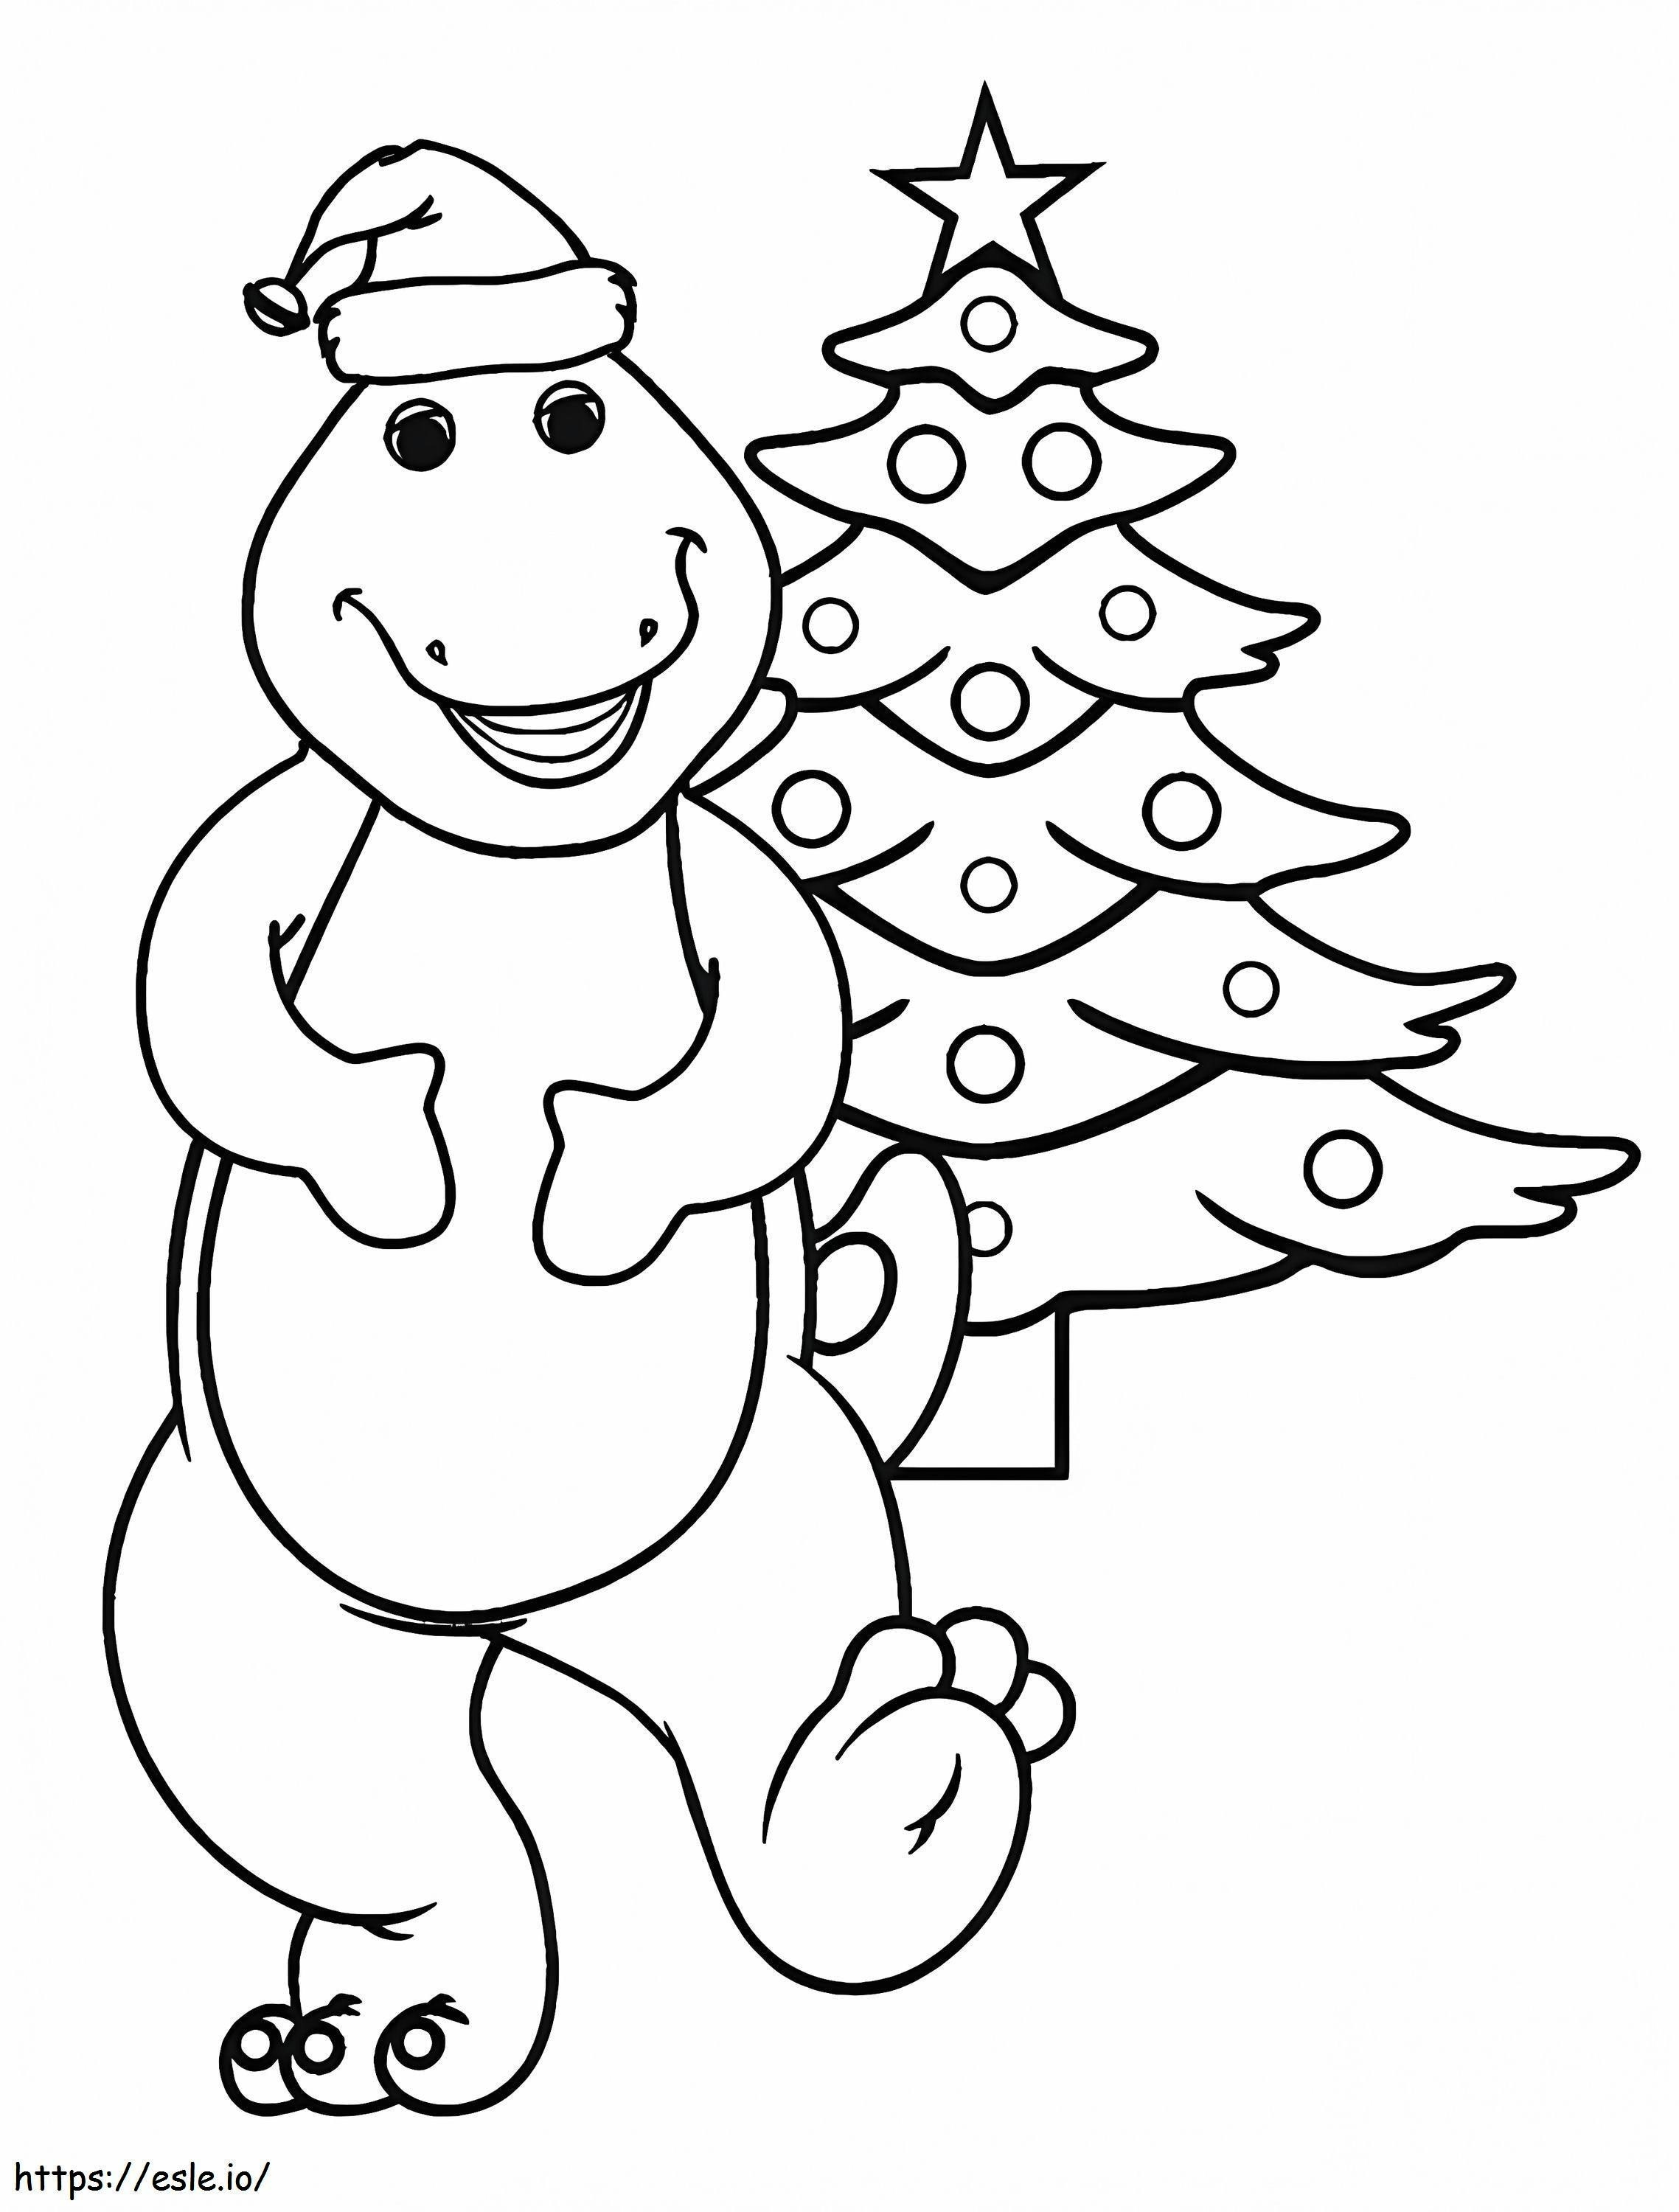 1583224139 Barney Para Navidad Barney Navidad para colorear